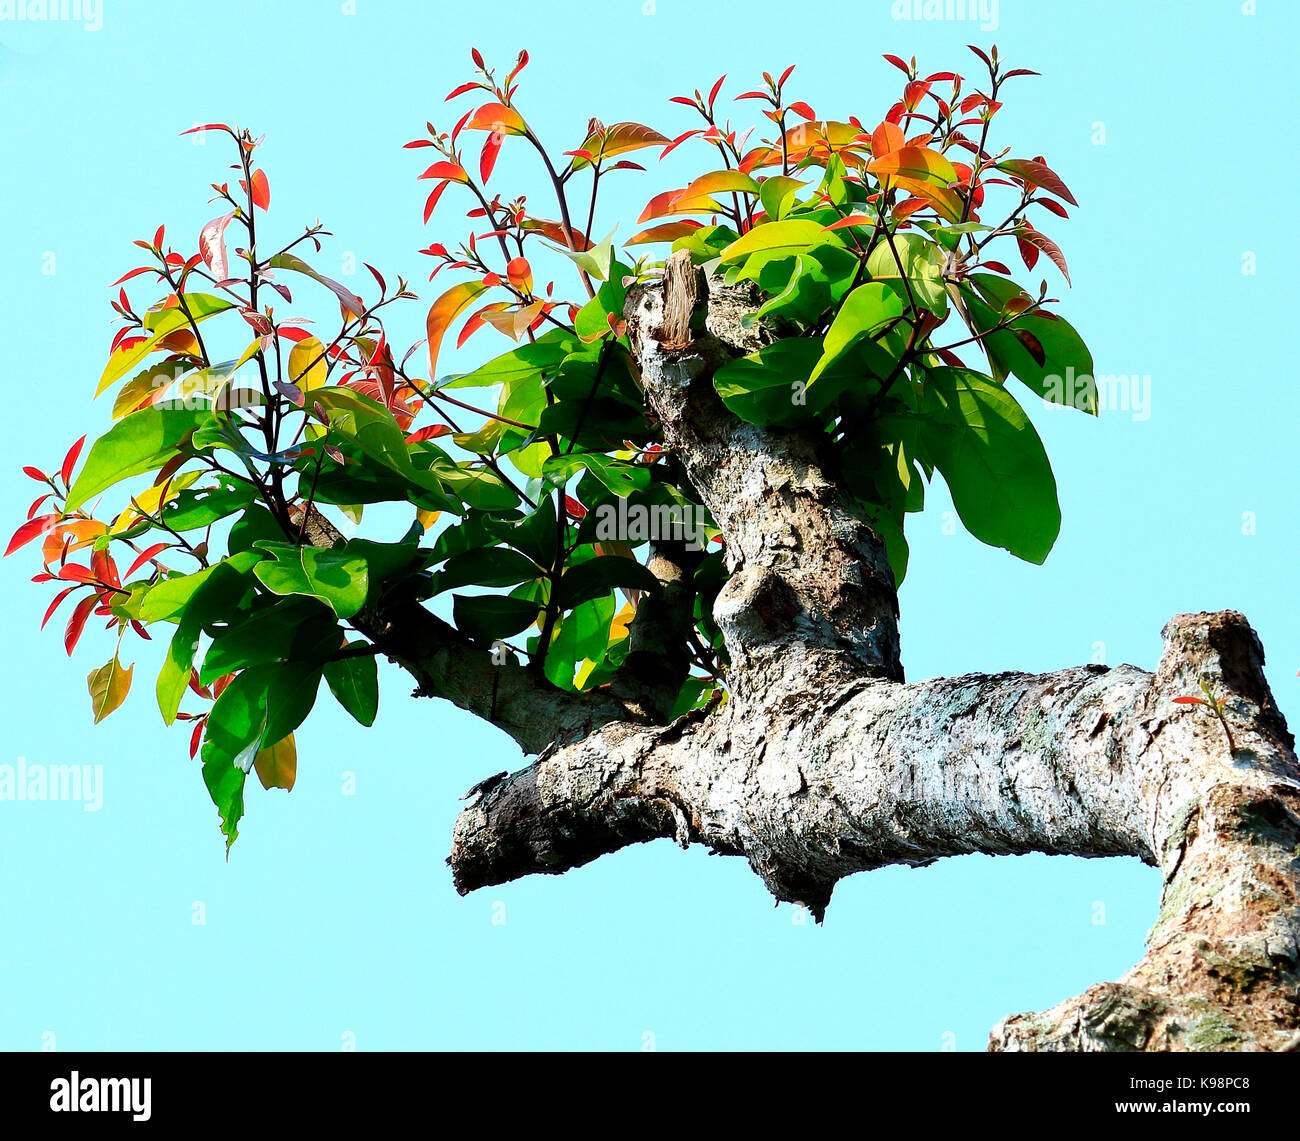 Belles feuilles d'un arbre, photographie prise en Inde Banque D'Images